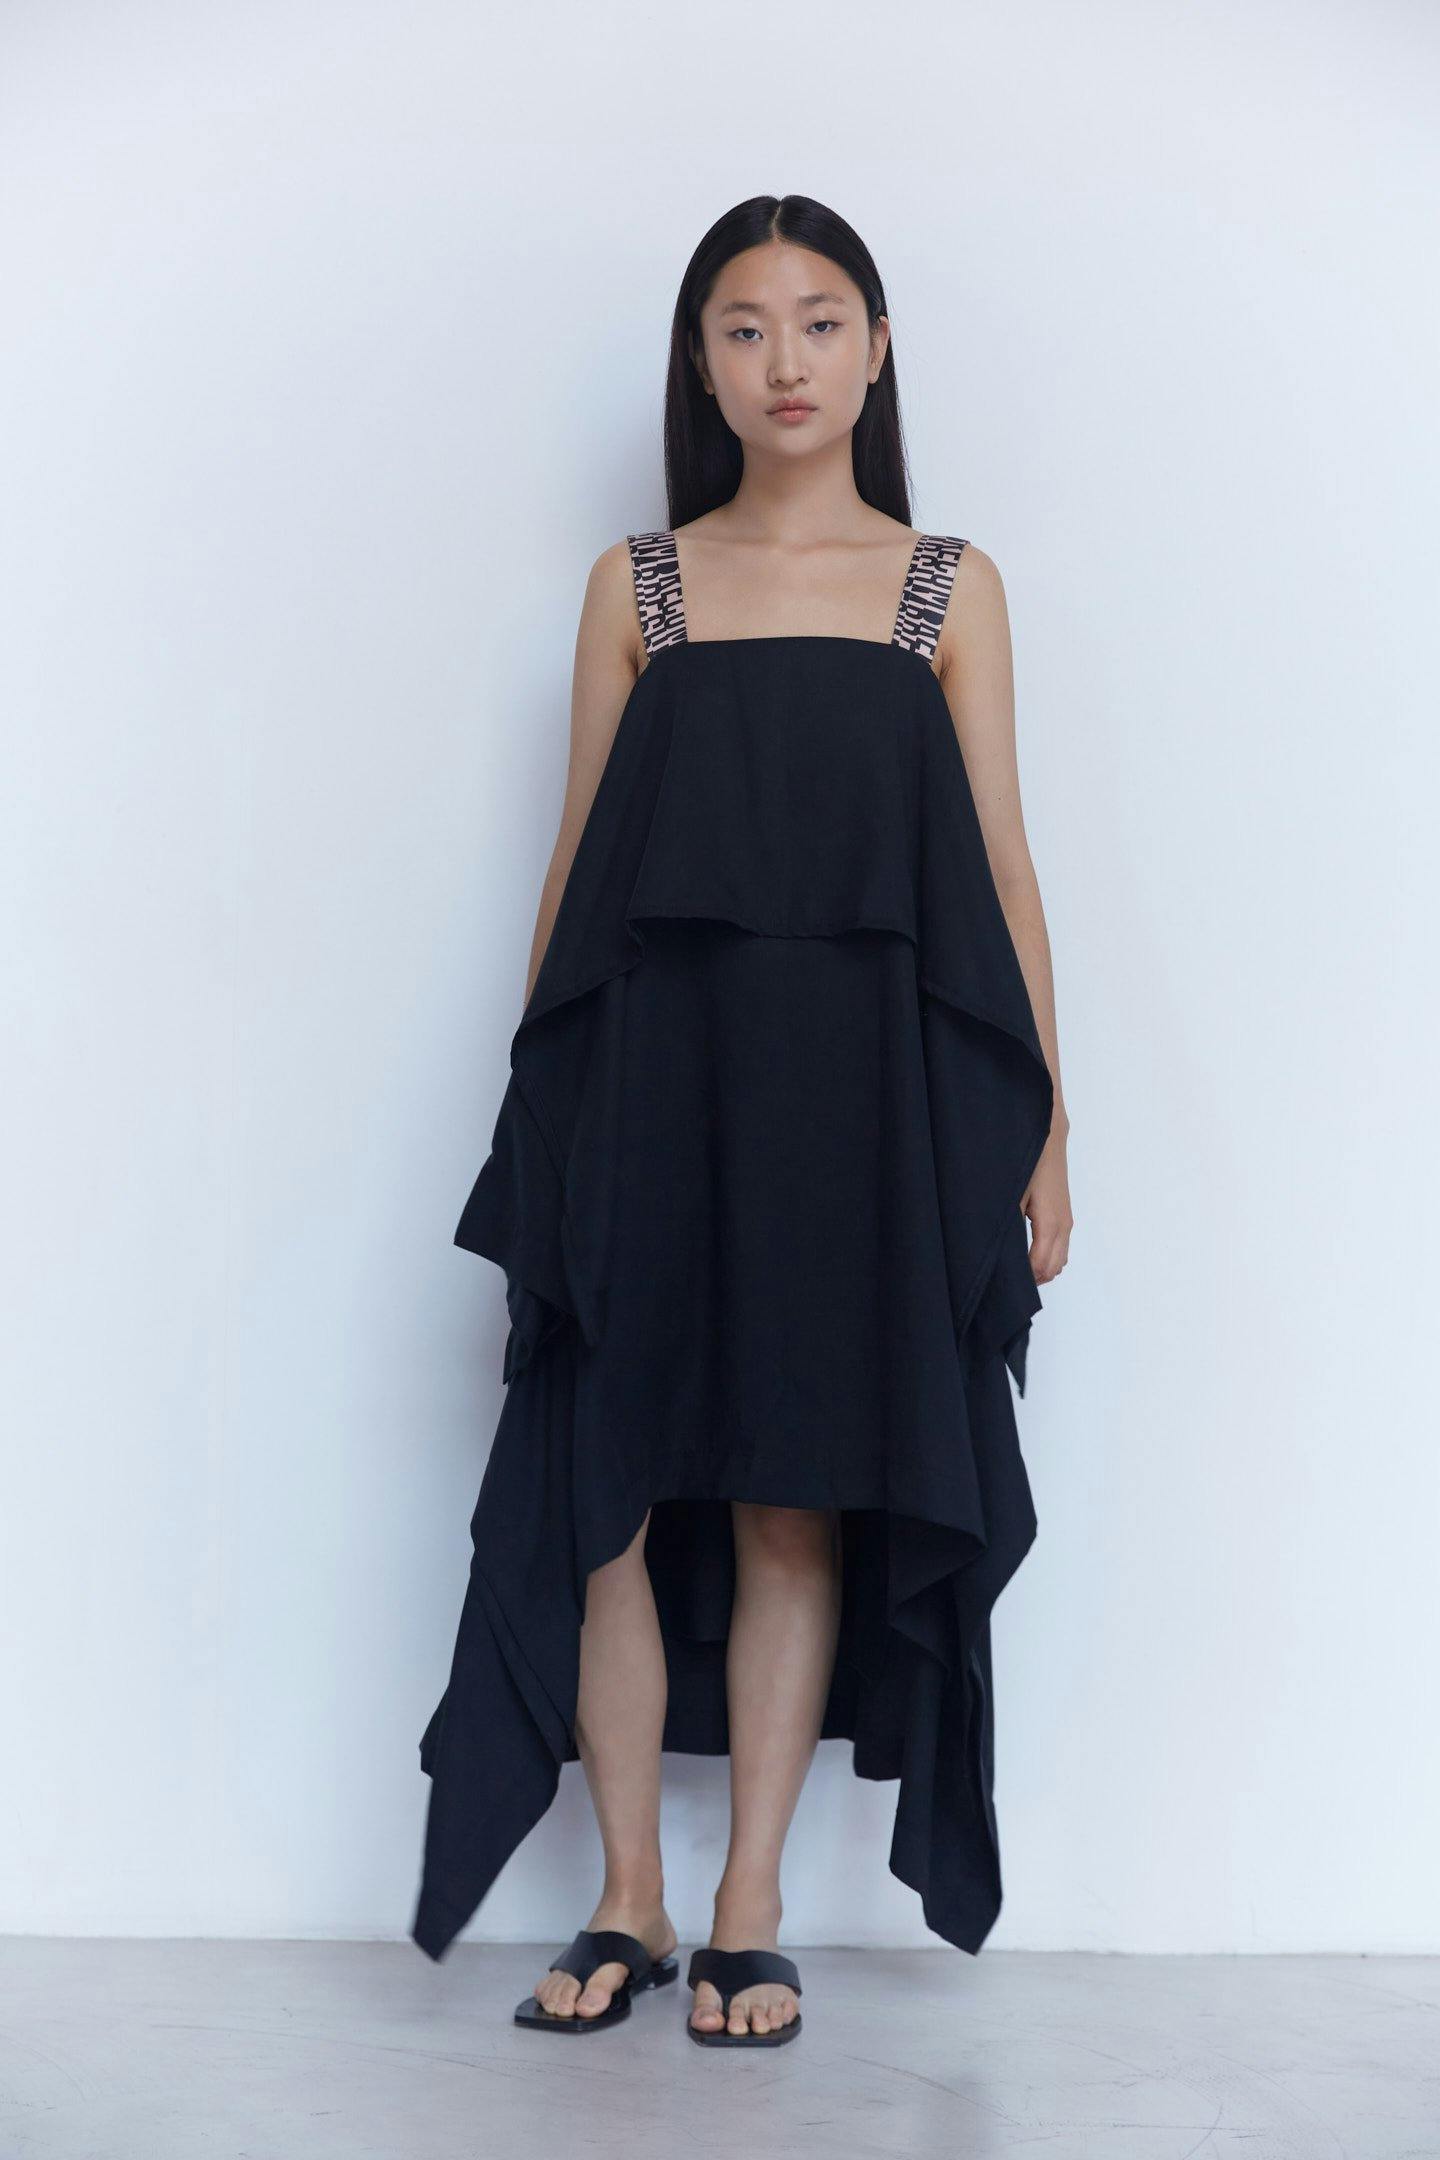 Black Tencel Dress: Item 004 Black, a product by Studio cumbre